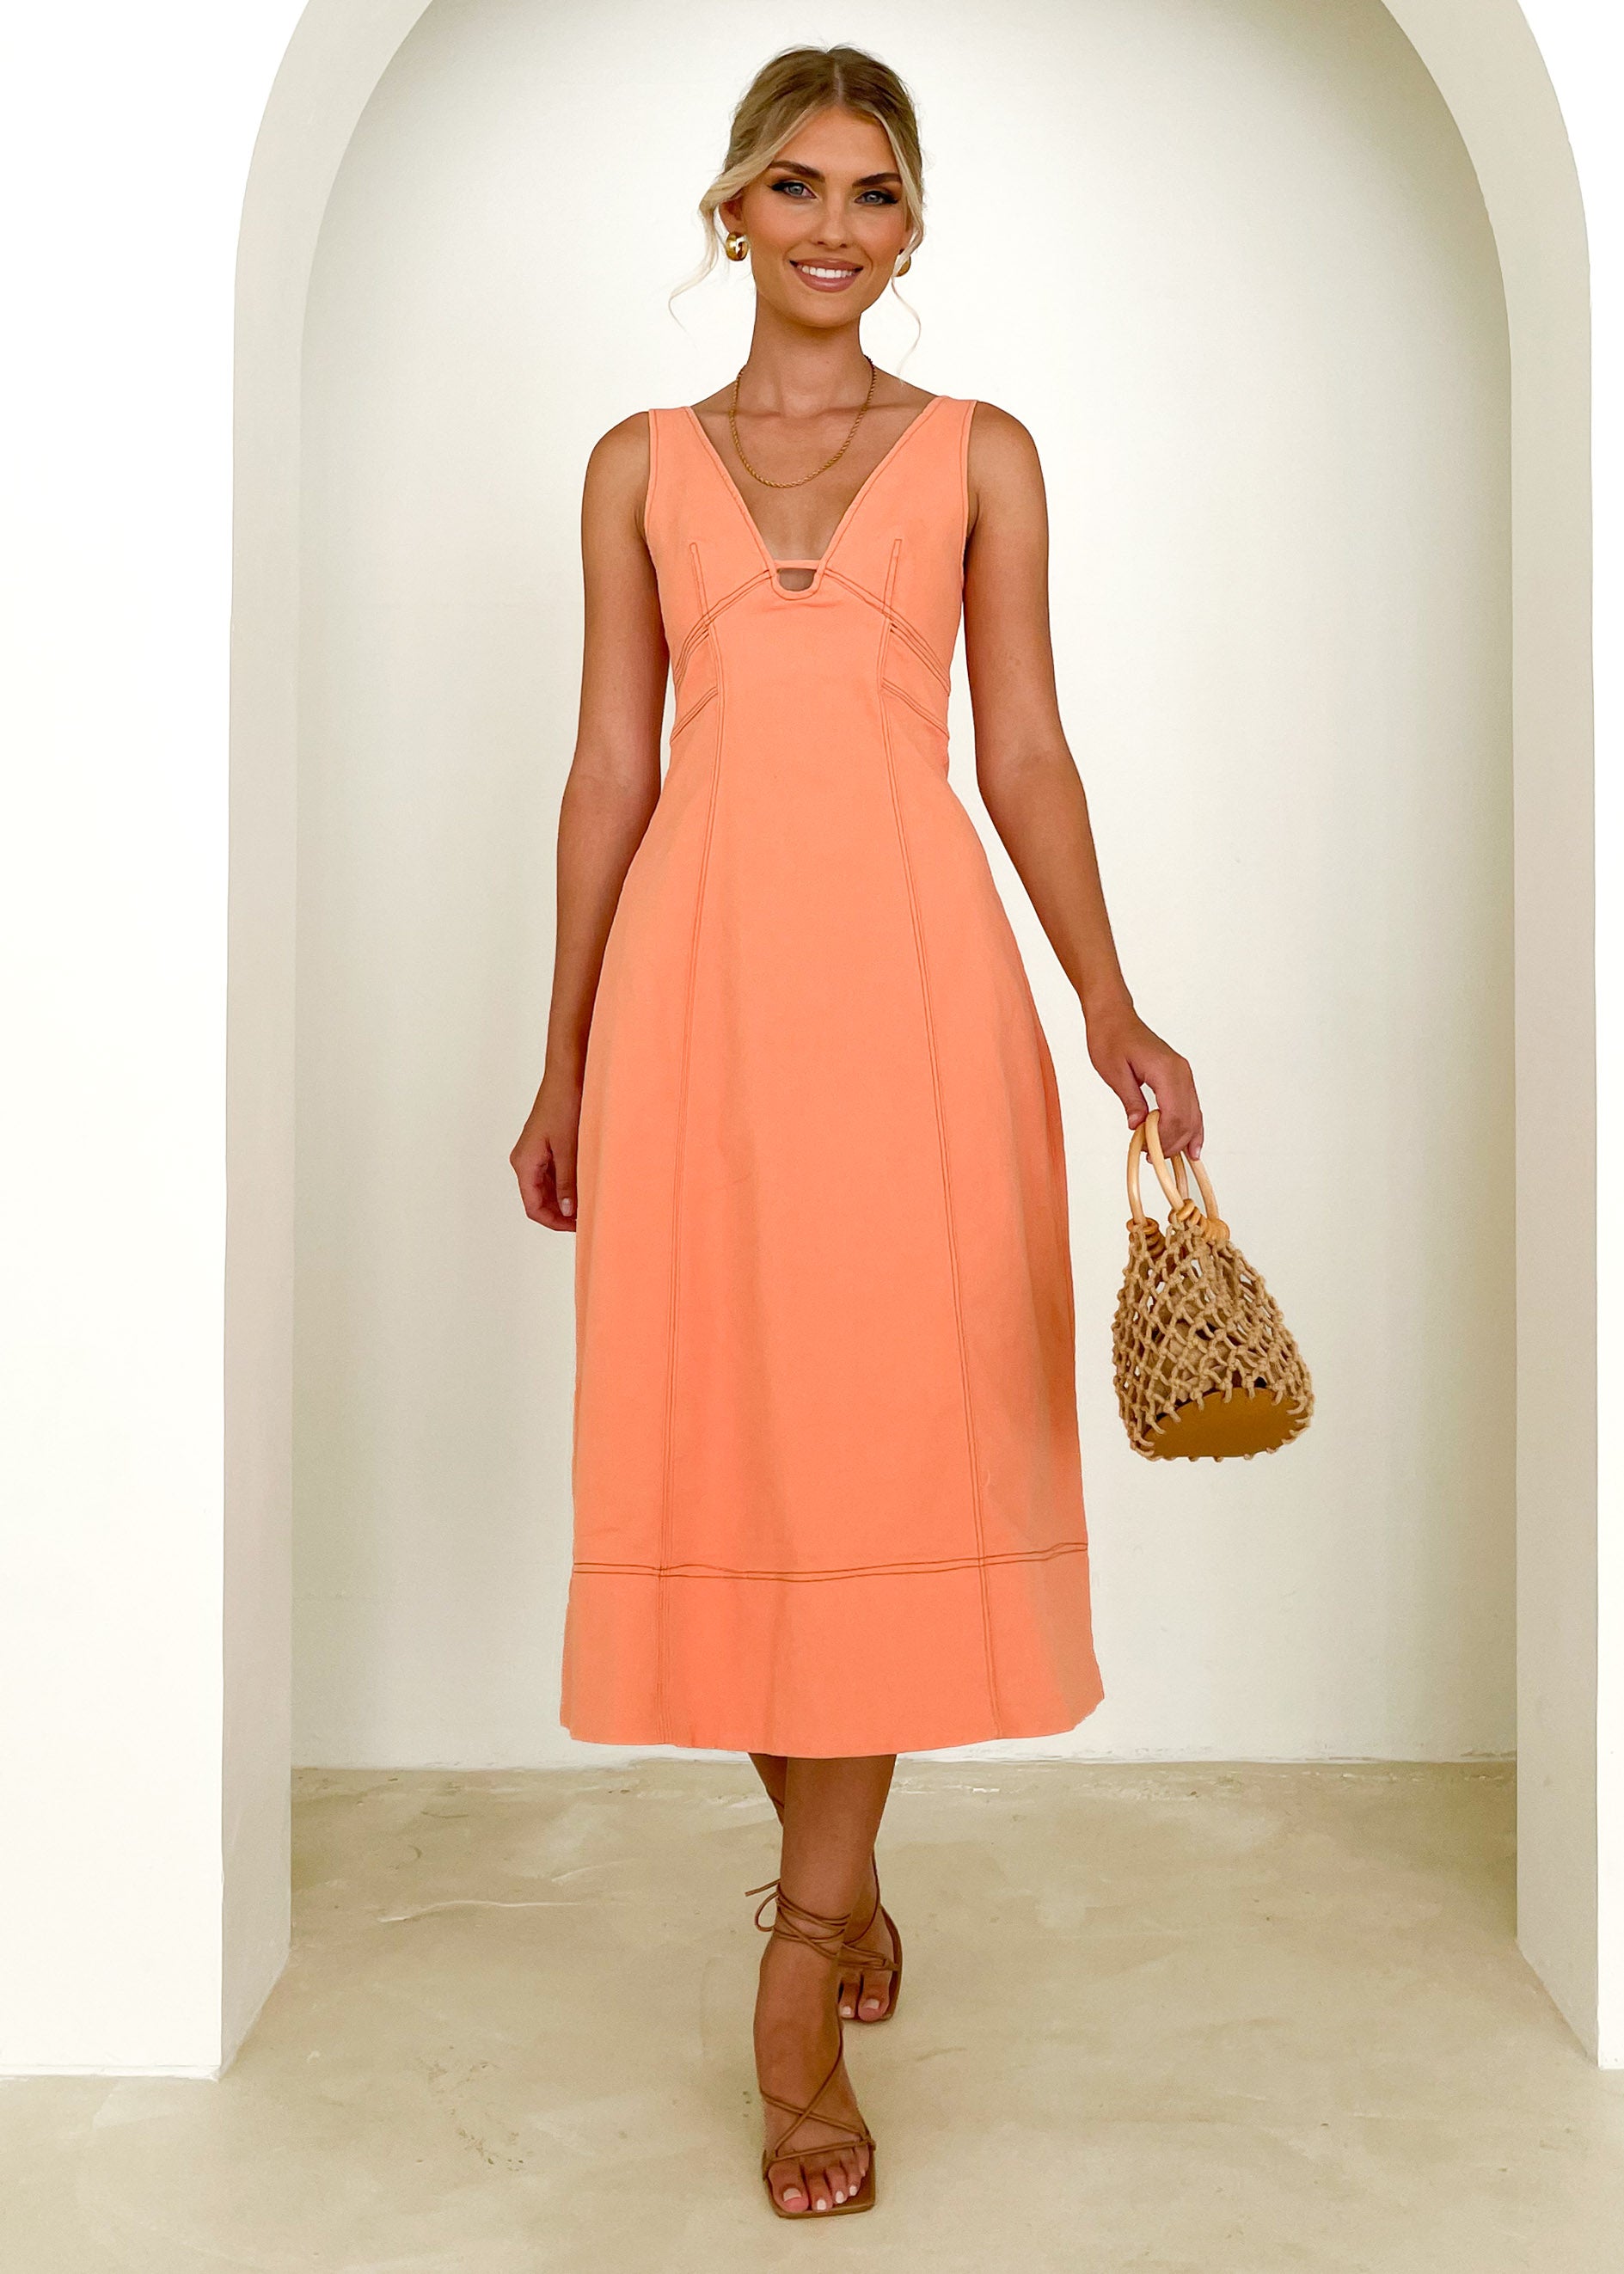 Tangerine Dress  Tangerine dress, Dress brands, Dress